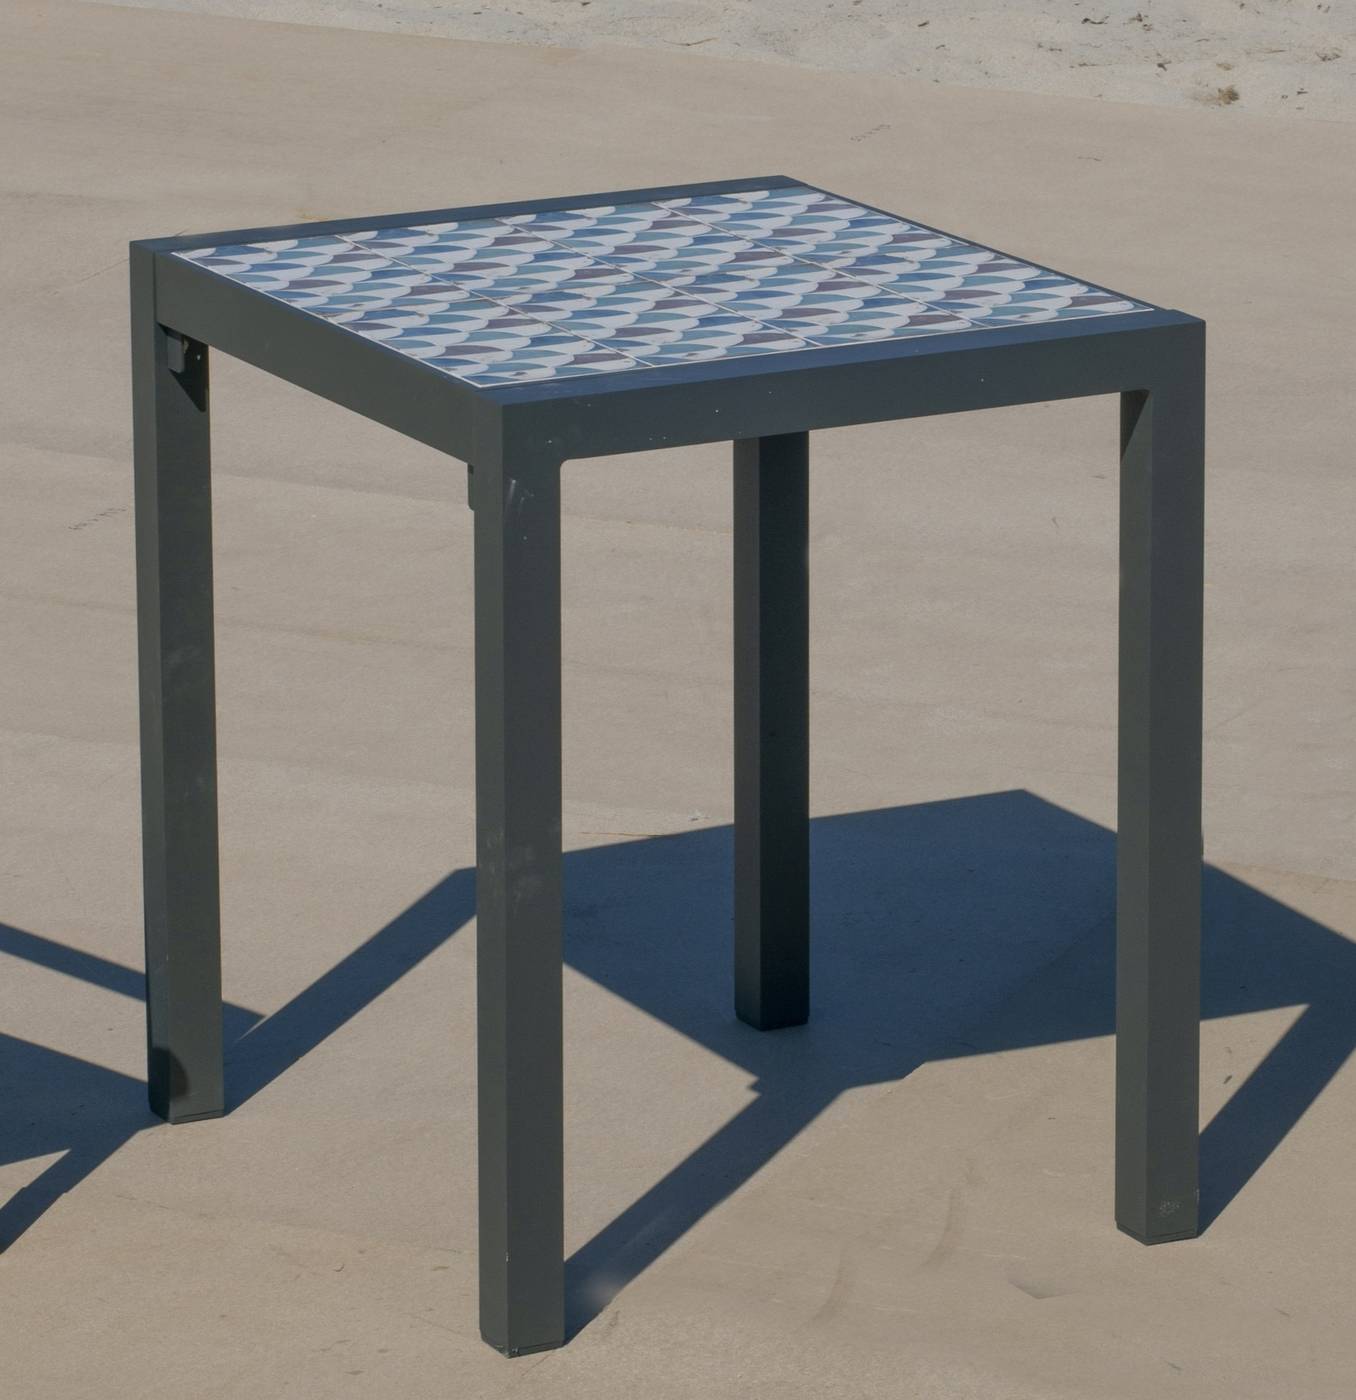 Set Góndola-60-2 Palma - Conjunto de aluminio color antracita: Mesa cuadrada con tablero mosaico de 60 cm + 2 sillones.